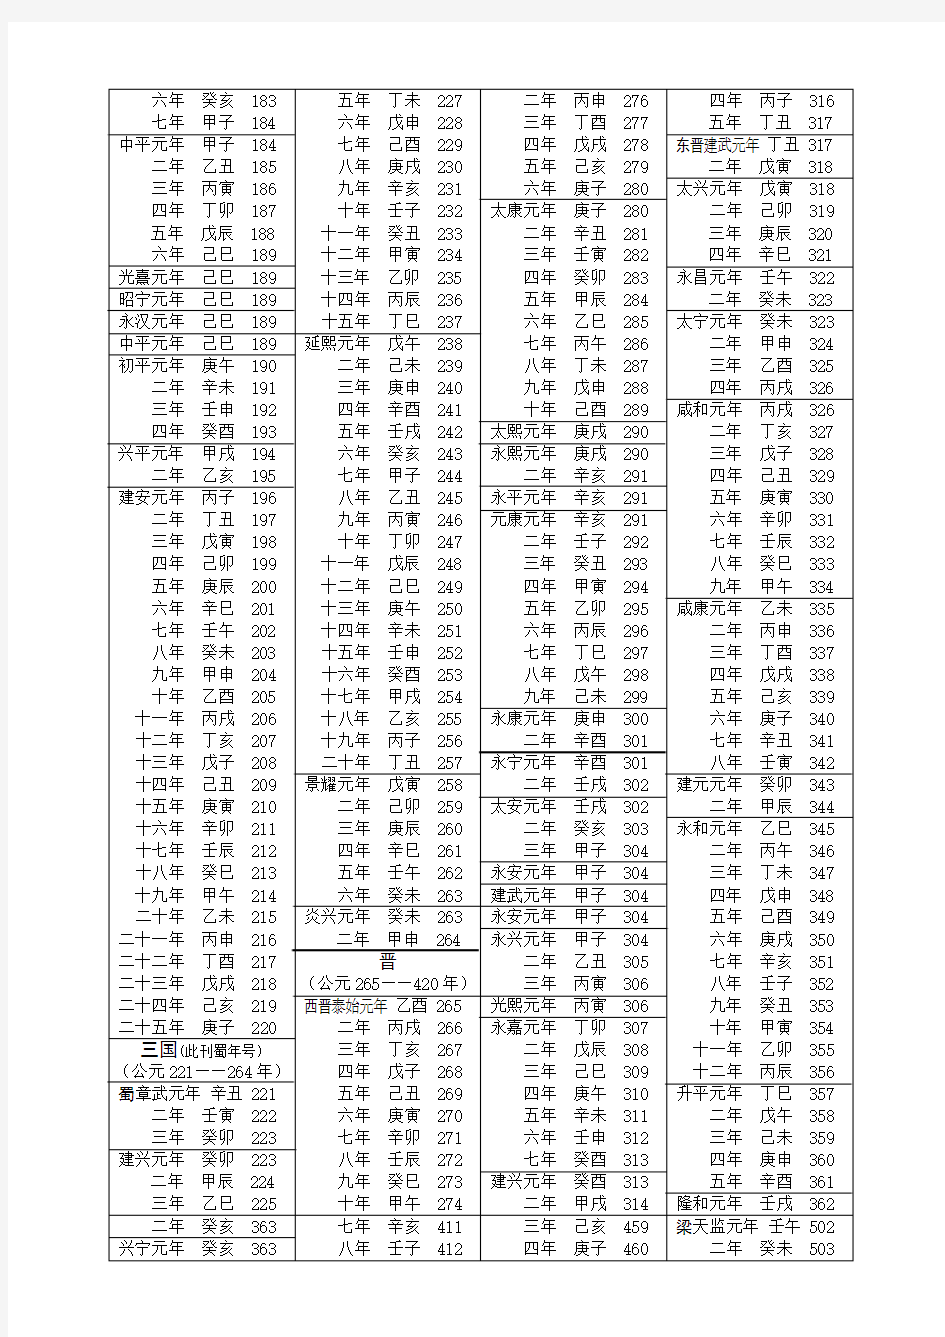 中国历史年号干支与公元纪年对照表(从公元元年起)